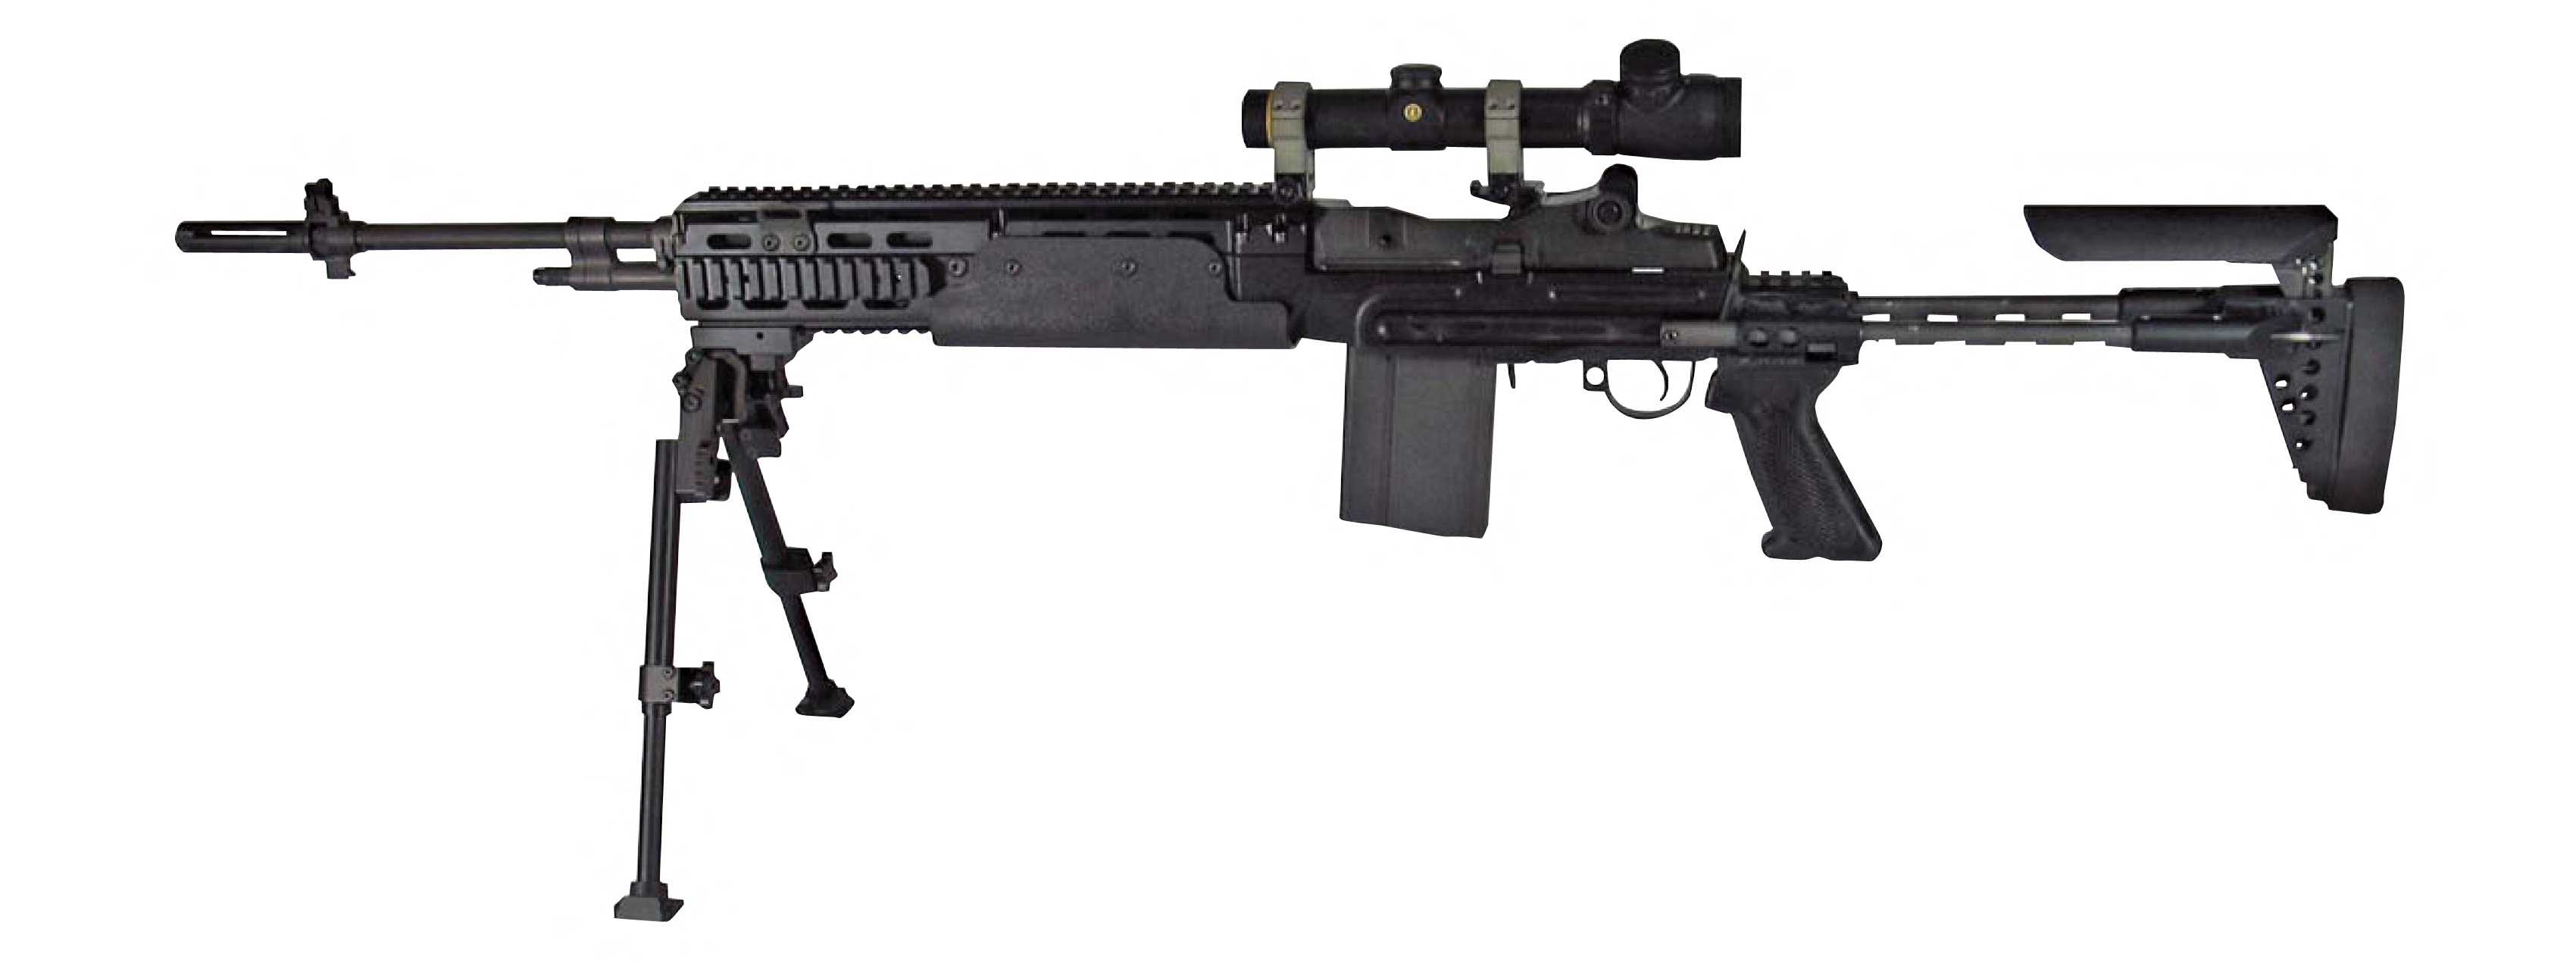 Anti-materiel rifle - Wikipedia